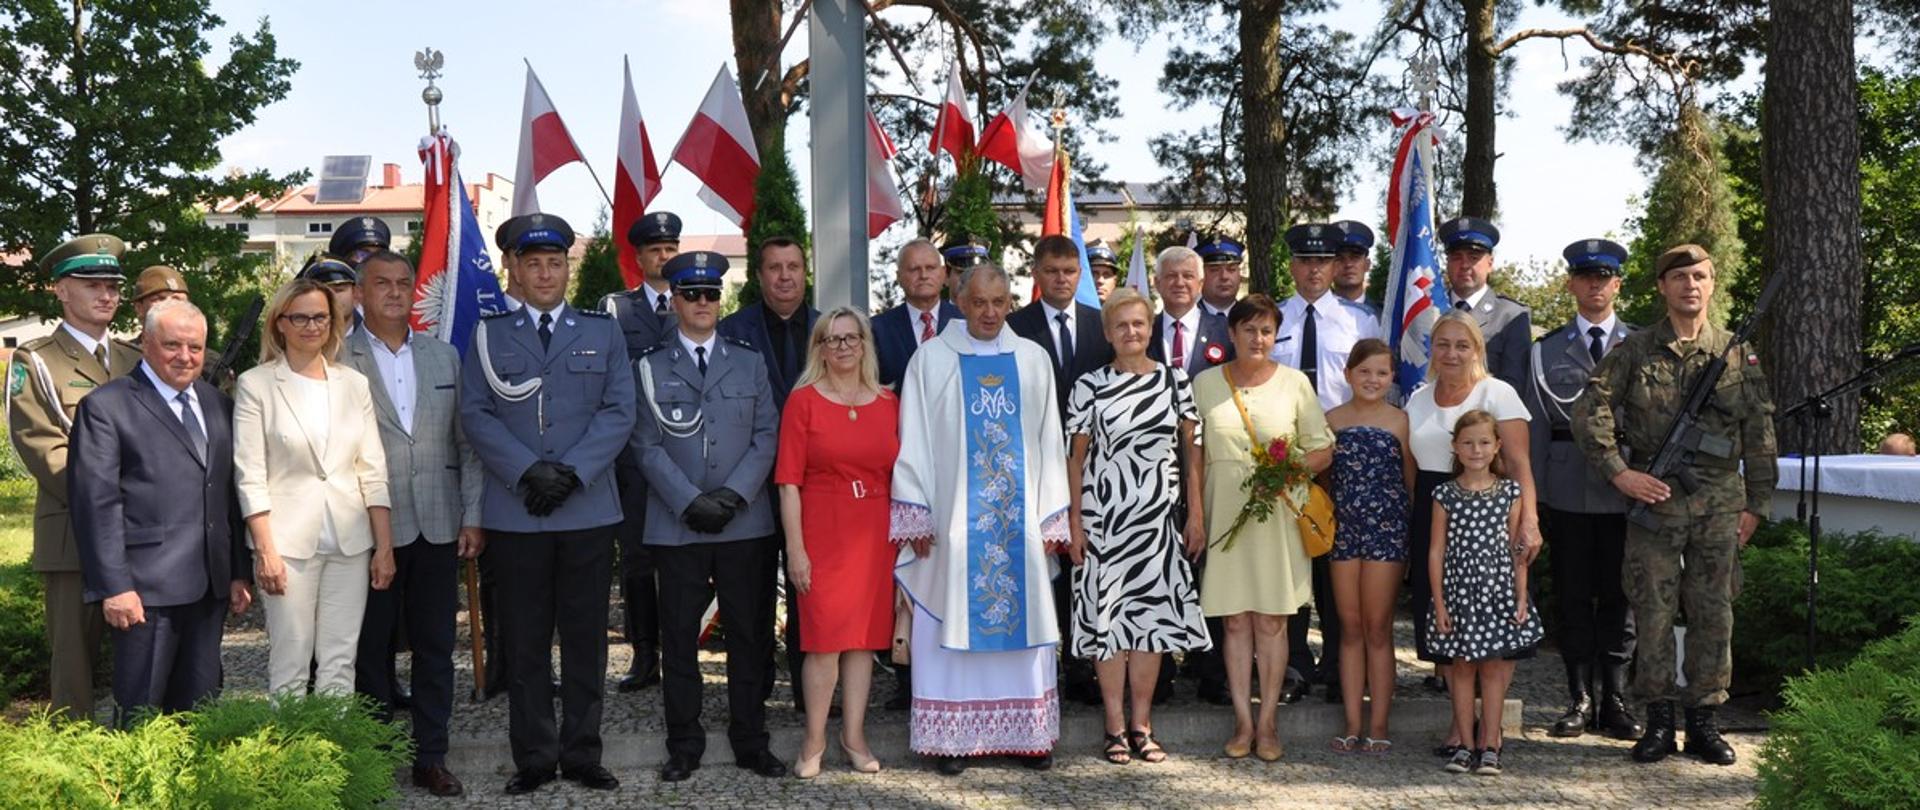 Na tle biało-czerwonych flag stoją w dwóch rzędach przedstawiciele samorządów, służby mundurowe ( Policja, Straż Pożarna, Straż Graniczna Służba Więzienna oraz Wojsko Polskie). Po środku stoi kapłan w ubraniu liturgicznym. 